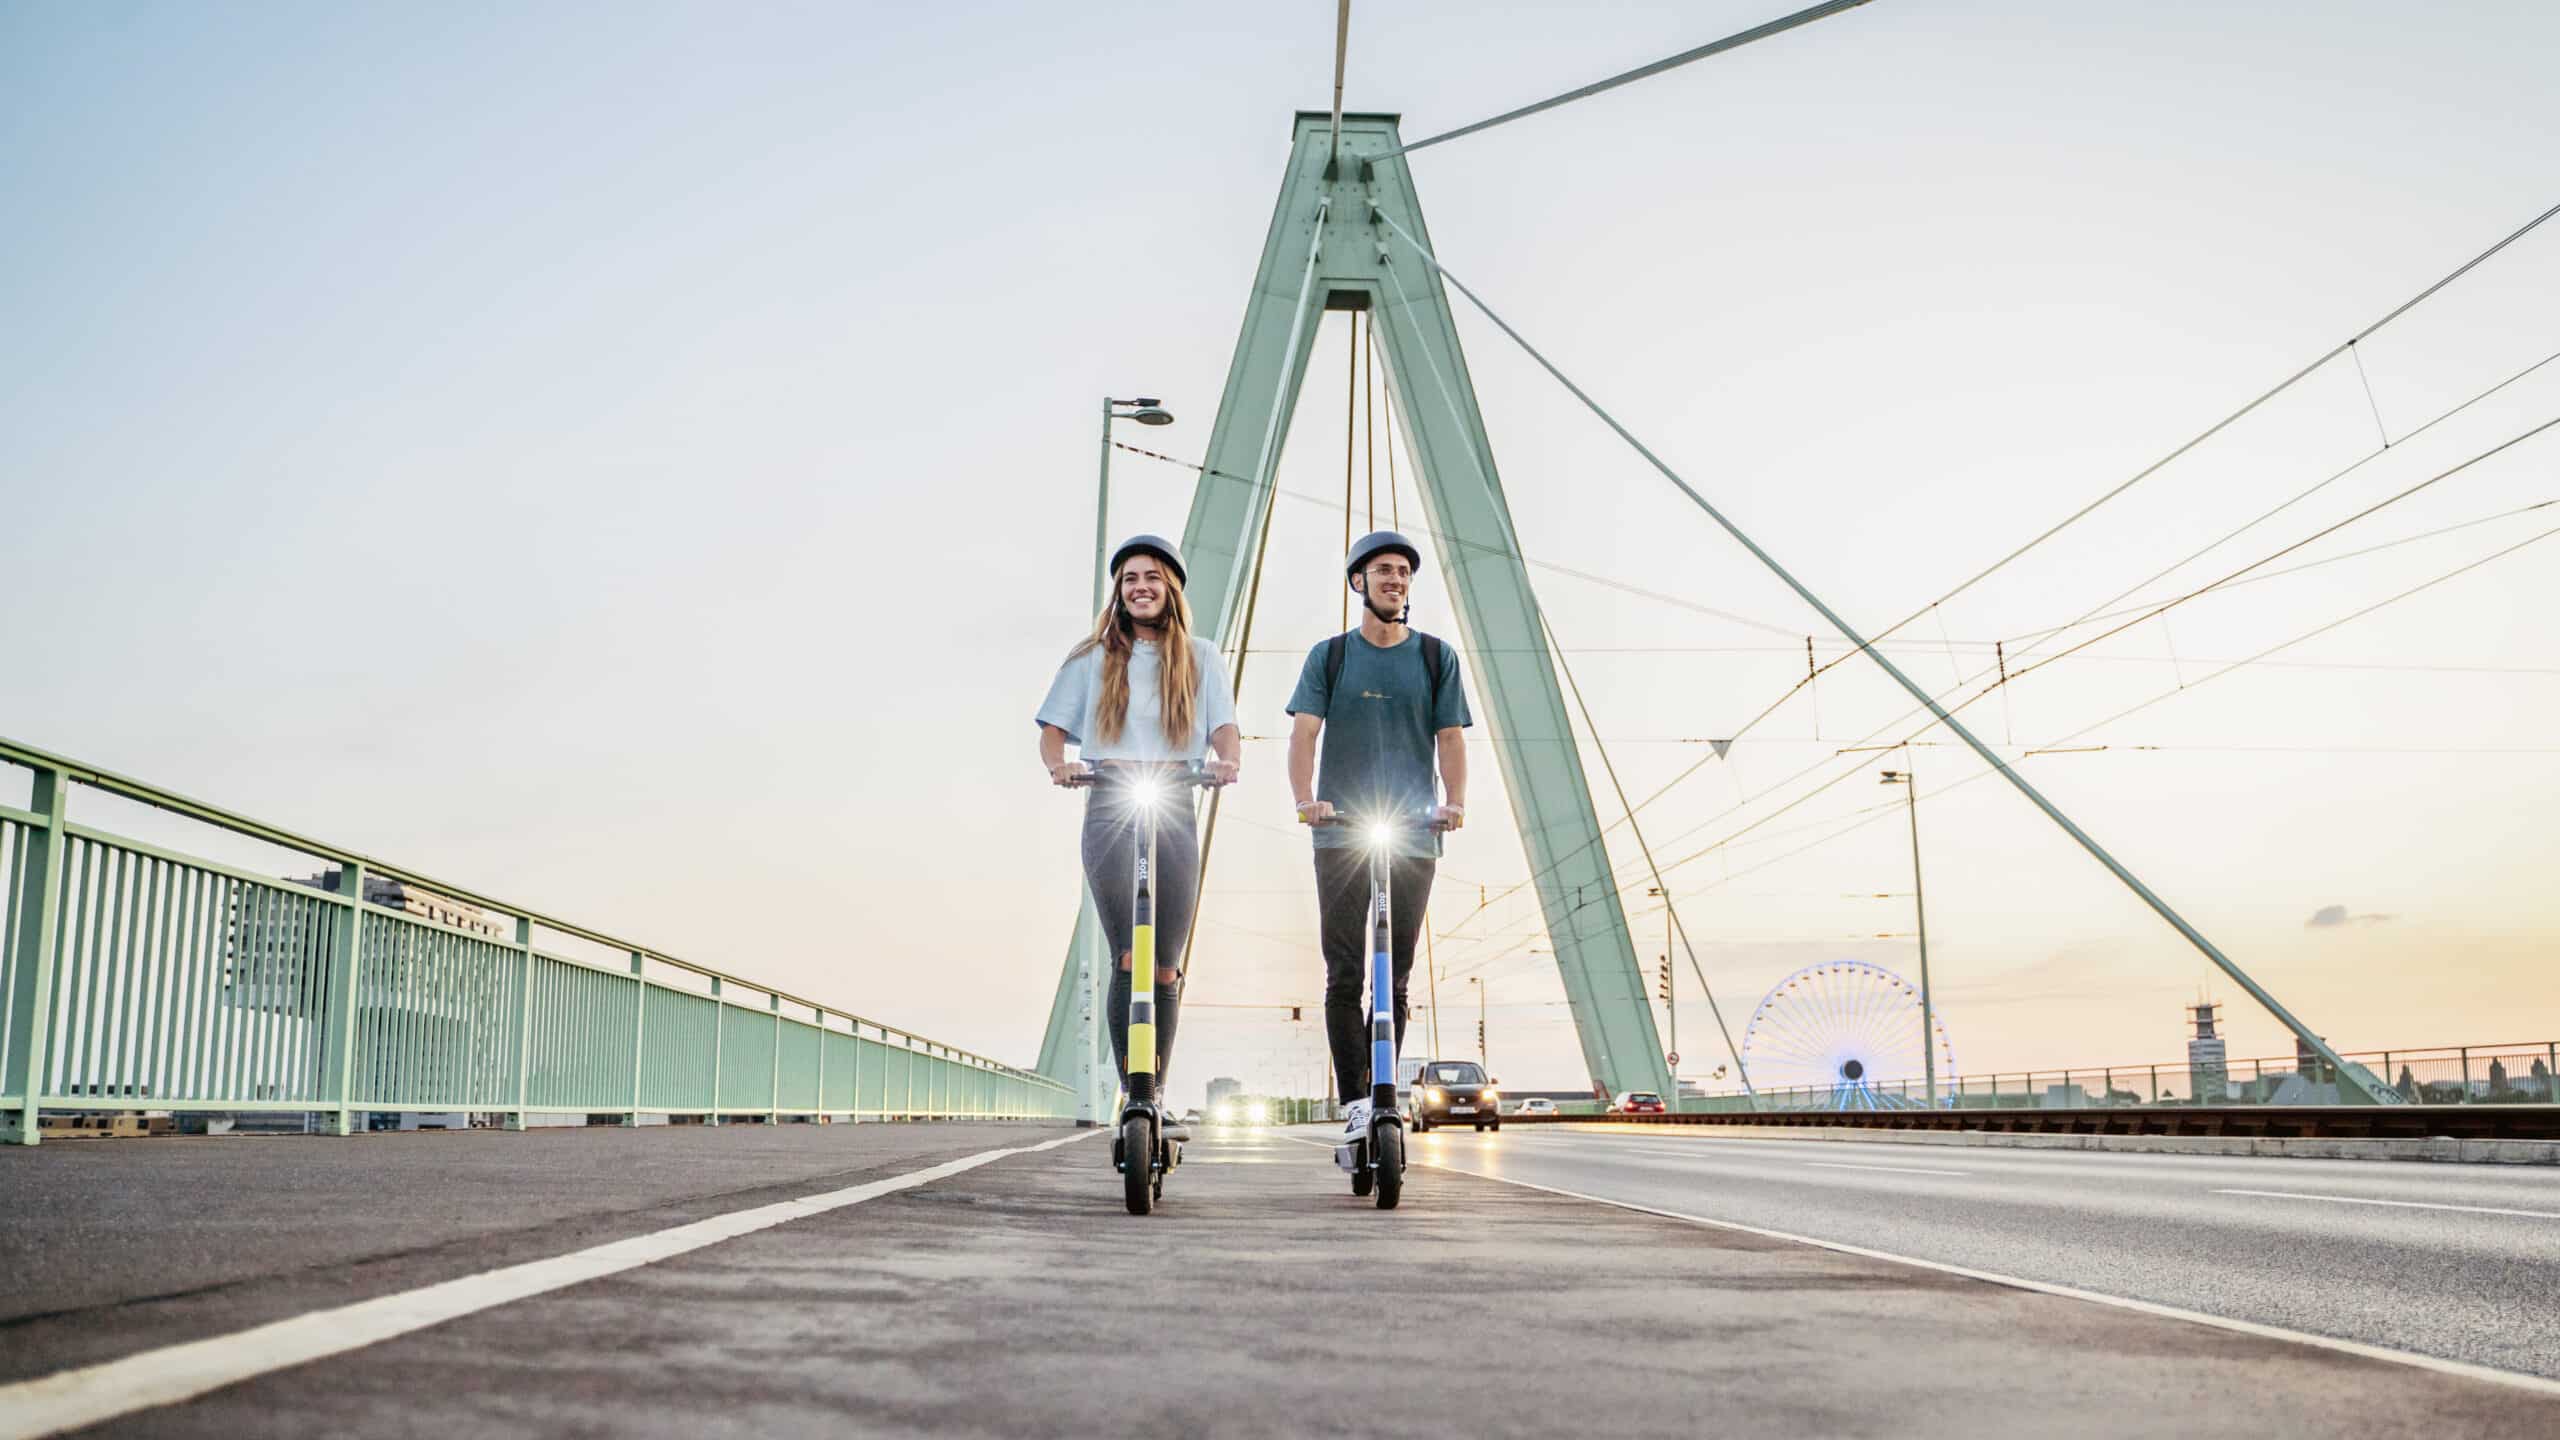 Een foto van een vrouw en een man die naast elkaar op een brug op Dott-scooters rijden.